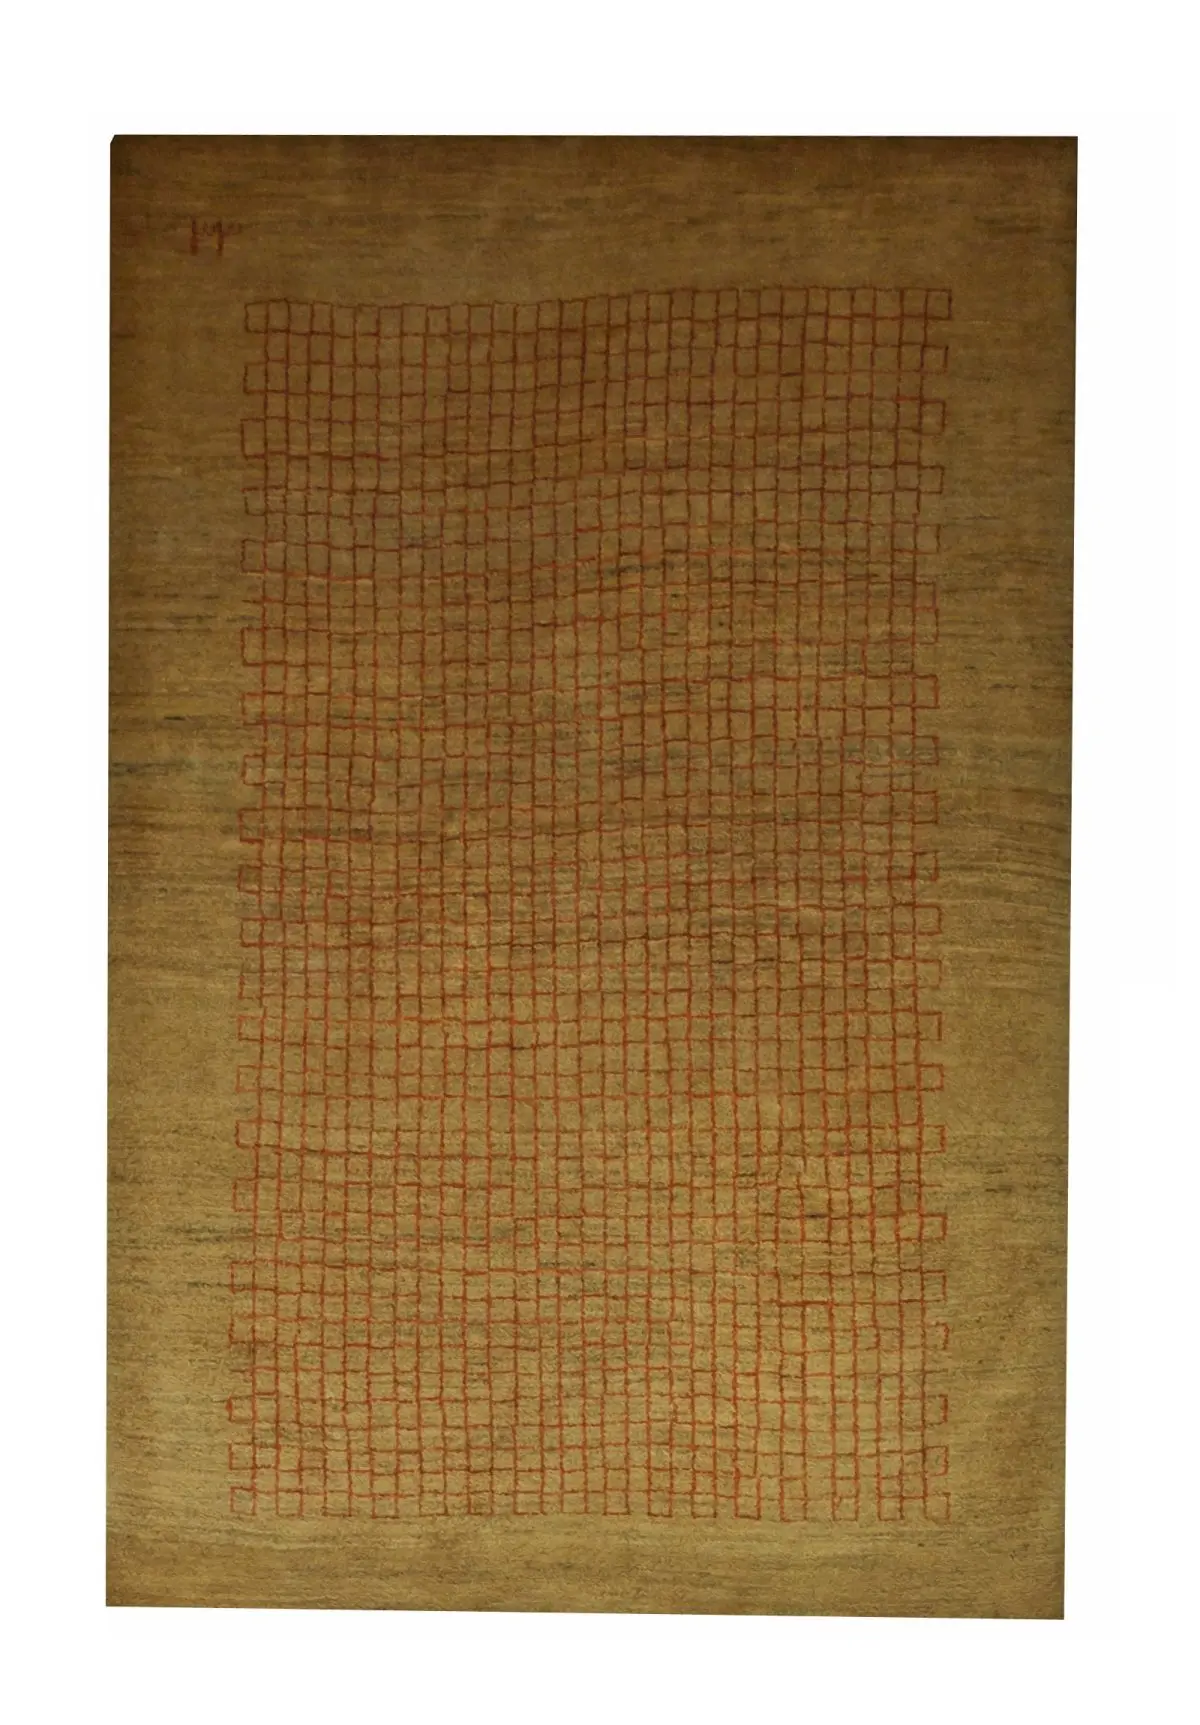 Persian Gabbeh Rug 3' 3" x 5' Wool Handmade Area Rug - Shabahang Royal Carpet